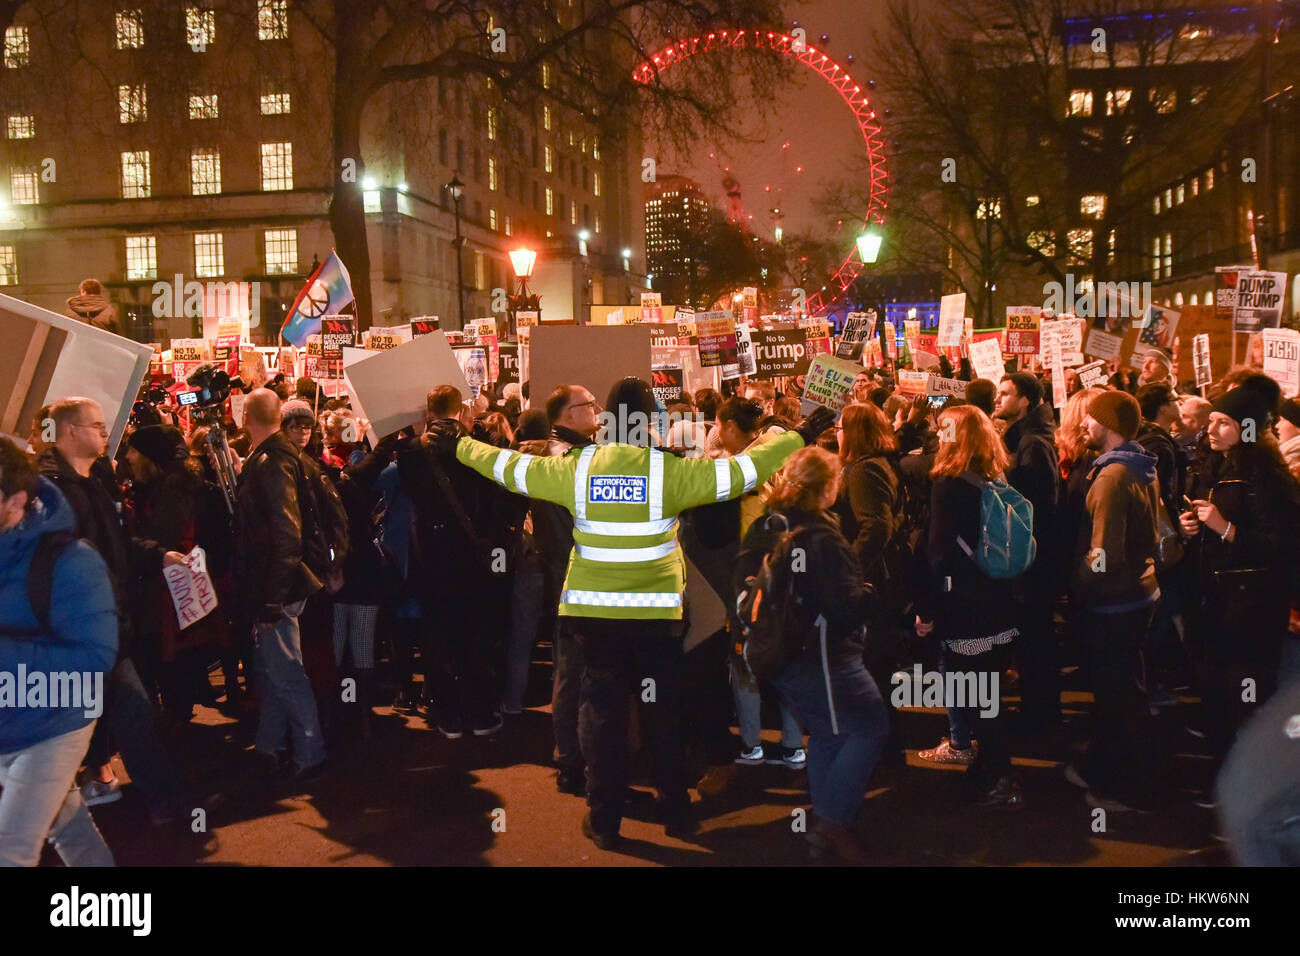 Whitehall, Londres, Royaume-Uni. 30 janvier 2017. 'Urgence' de démonstration par des manifestants sur Whitehall contre le Président Donald Trump's ban sur les Musulmans. Crédit : Matthieu Chattle/Alamy Live News Banque D'Images